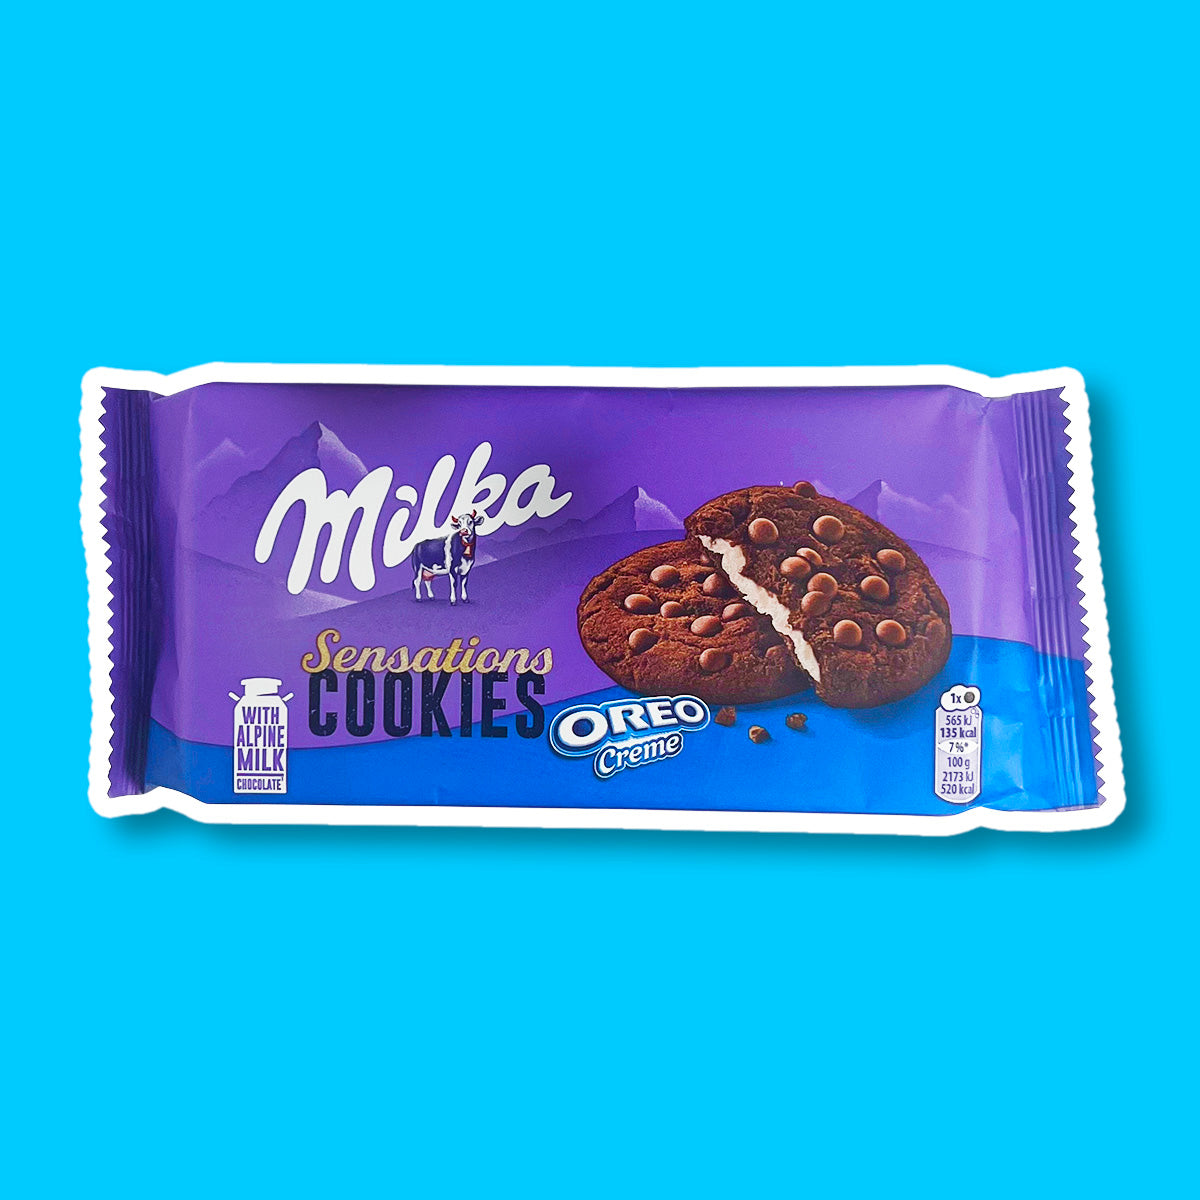 Un emballage mauve en haut et bleu au-dessus avec 2 cookies marrons fourrés avec une crème blanche et des pépites de chocolat a-dessus, le tout sur fond bleu